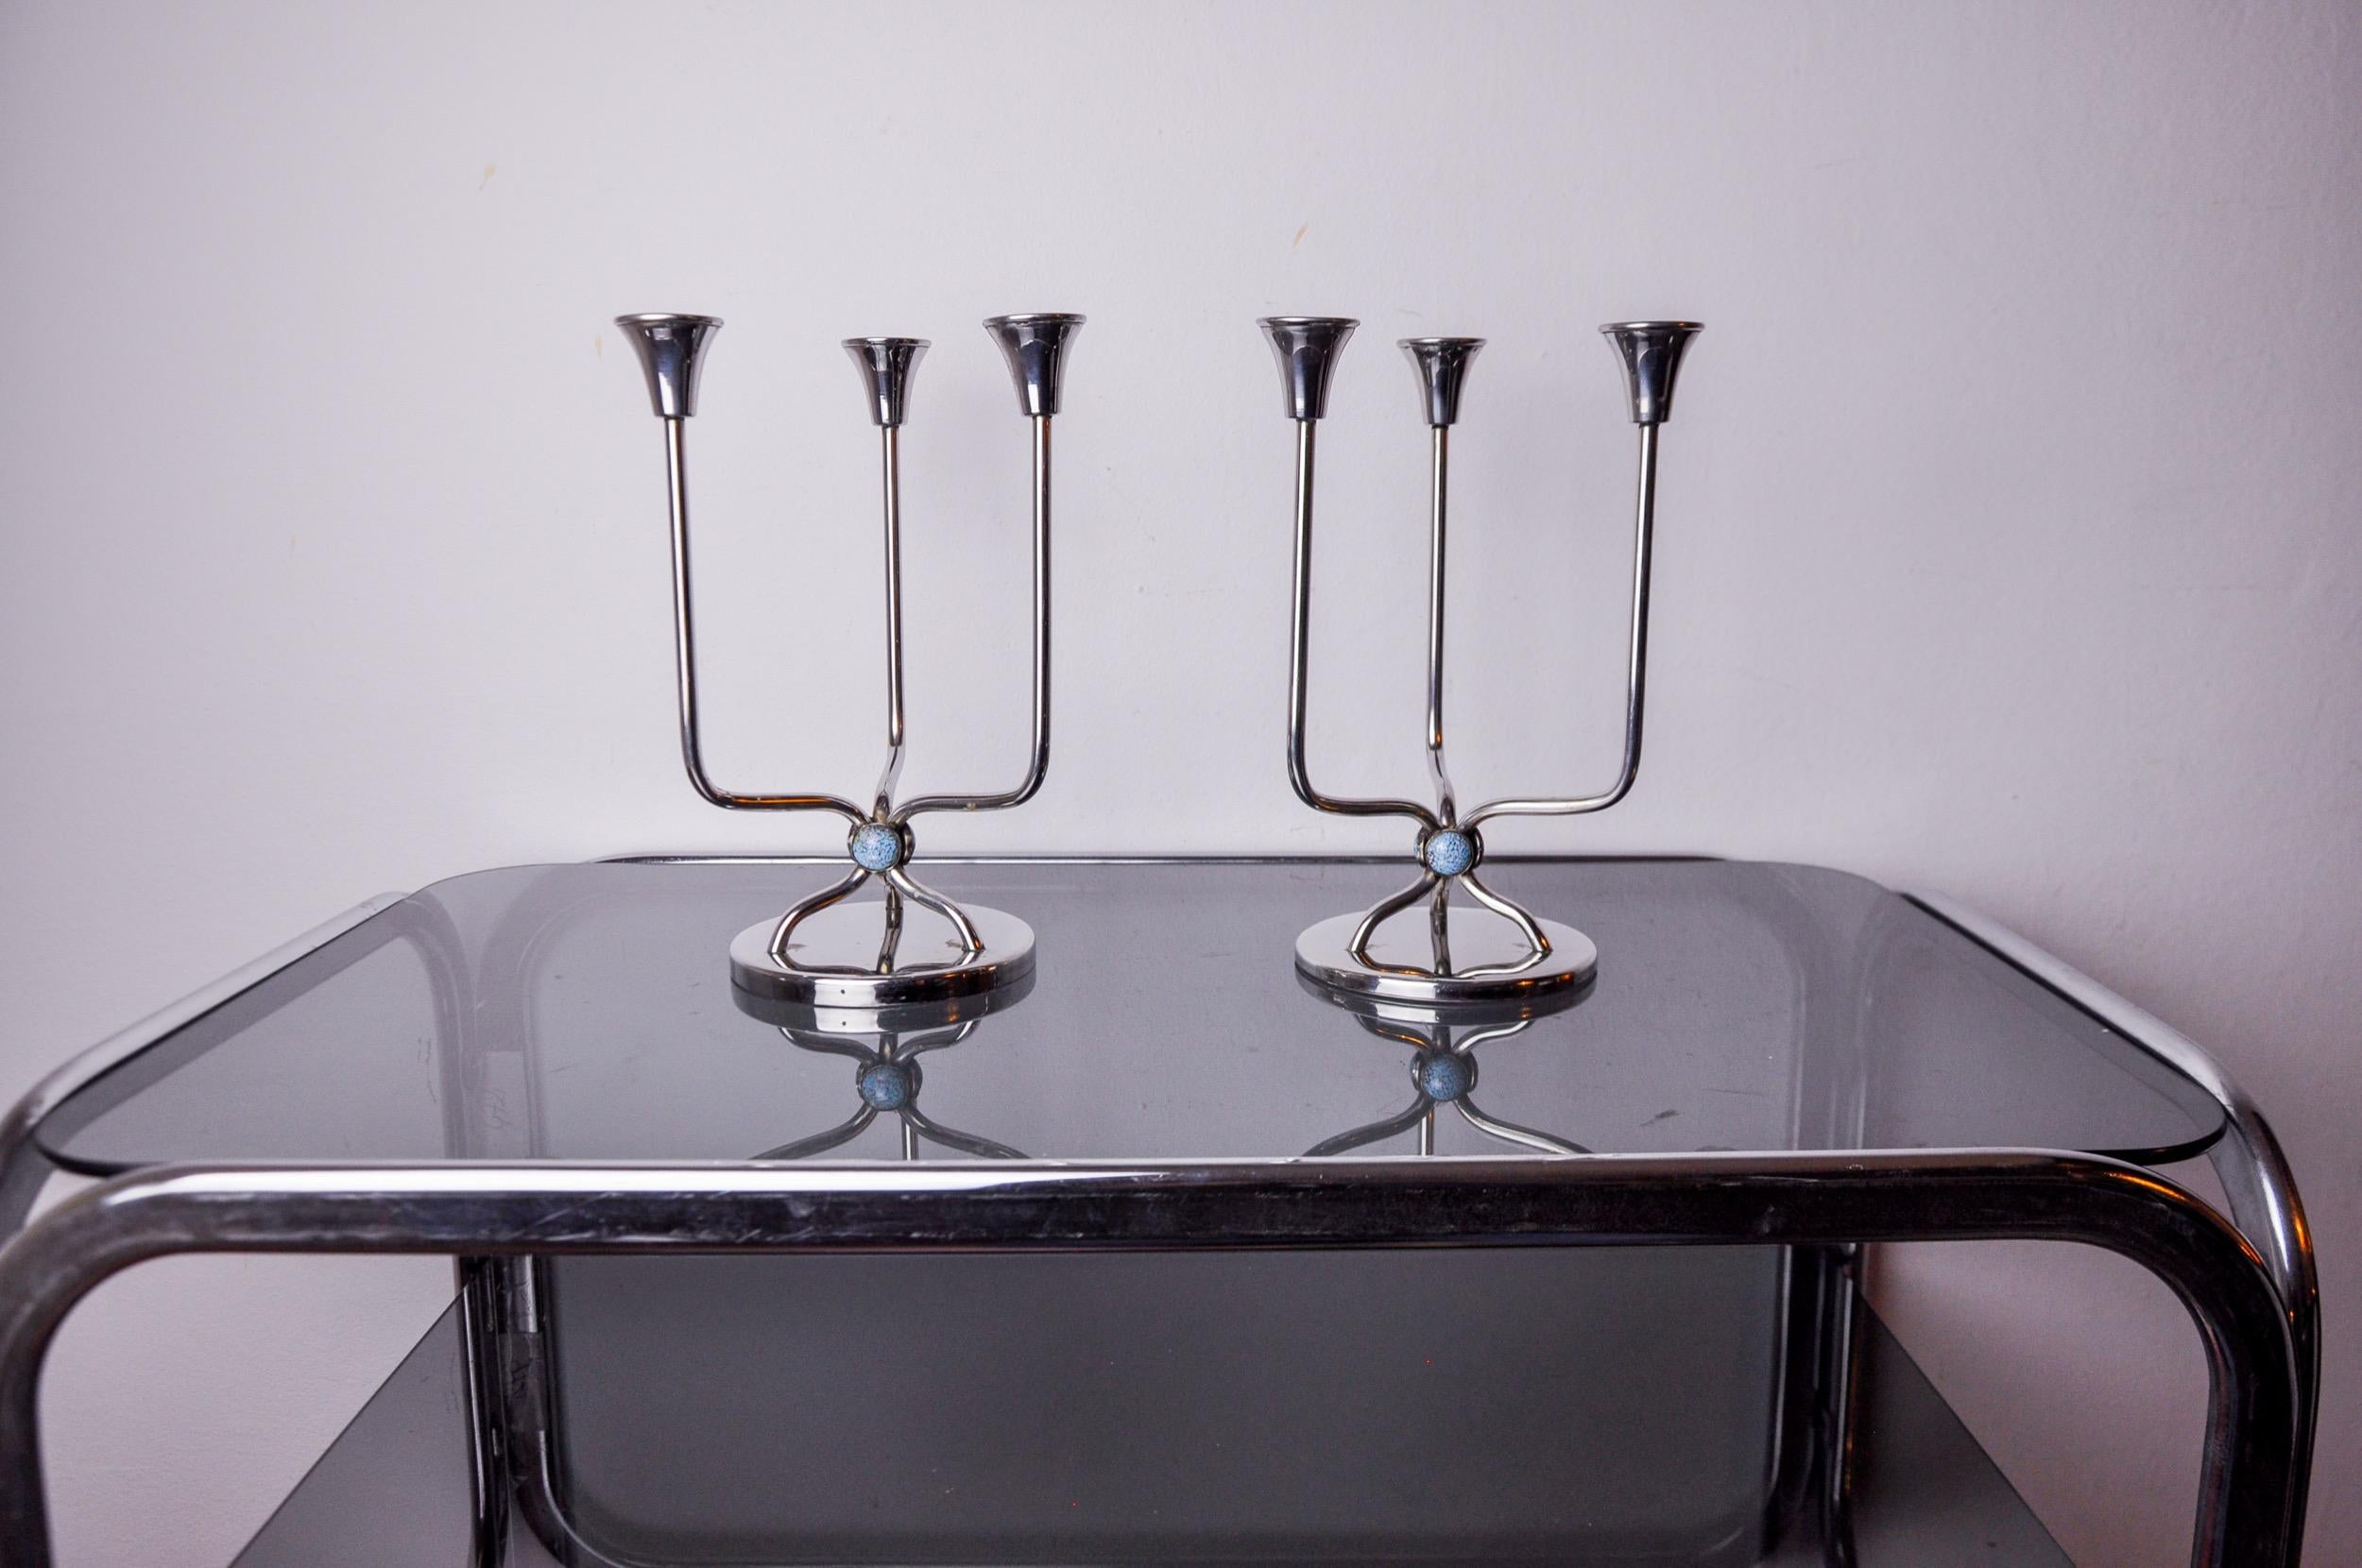 Hervorragendes Paar Art-Déco-Kerzenhalter aus rostfreiem Stahl, entworfen und hergestellt in Spanien in den 1970er Jahren. Struktur aus rostfreiem Stahl 18/8, die 3 mit blauen Steinen verzierte Kerzen aufnehmen kann. Hervorragendes Designobjekt, das